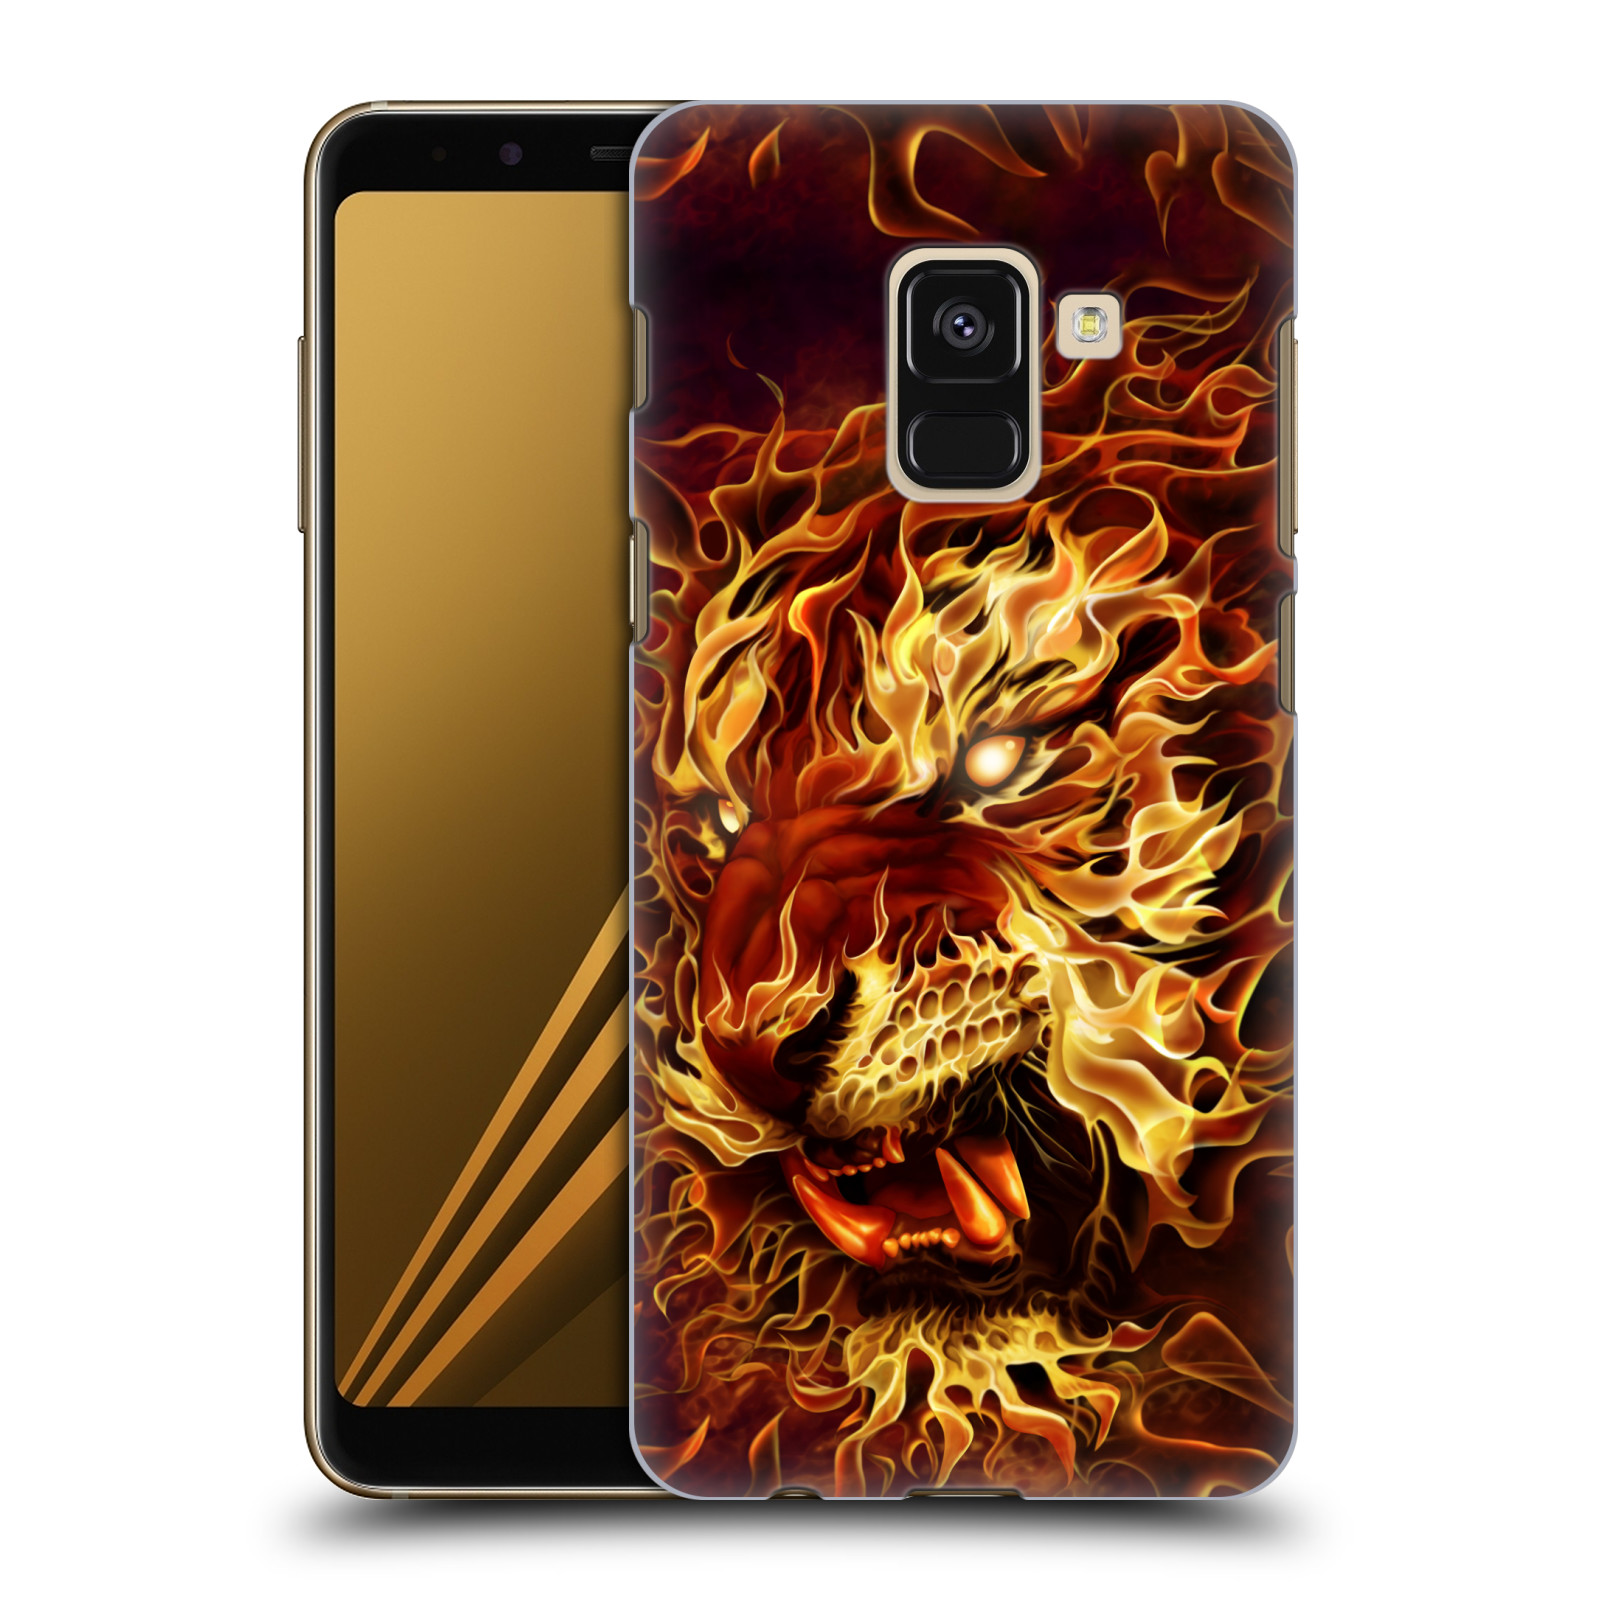 Pouzdro na mobil Samsung Galaxy A8+ 2018, A8 PLUS 2018 - HEAD CASE - Fantasy kresby Tom Wood - Ohnivý tygr